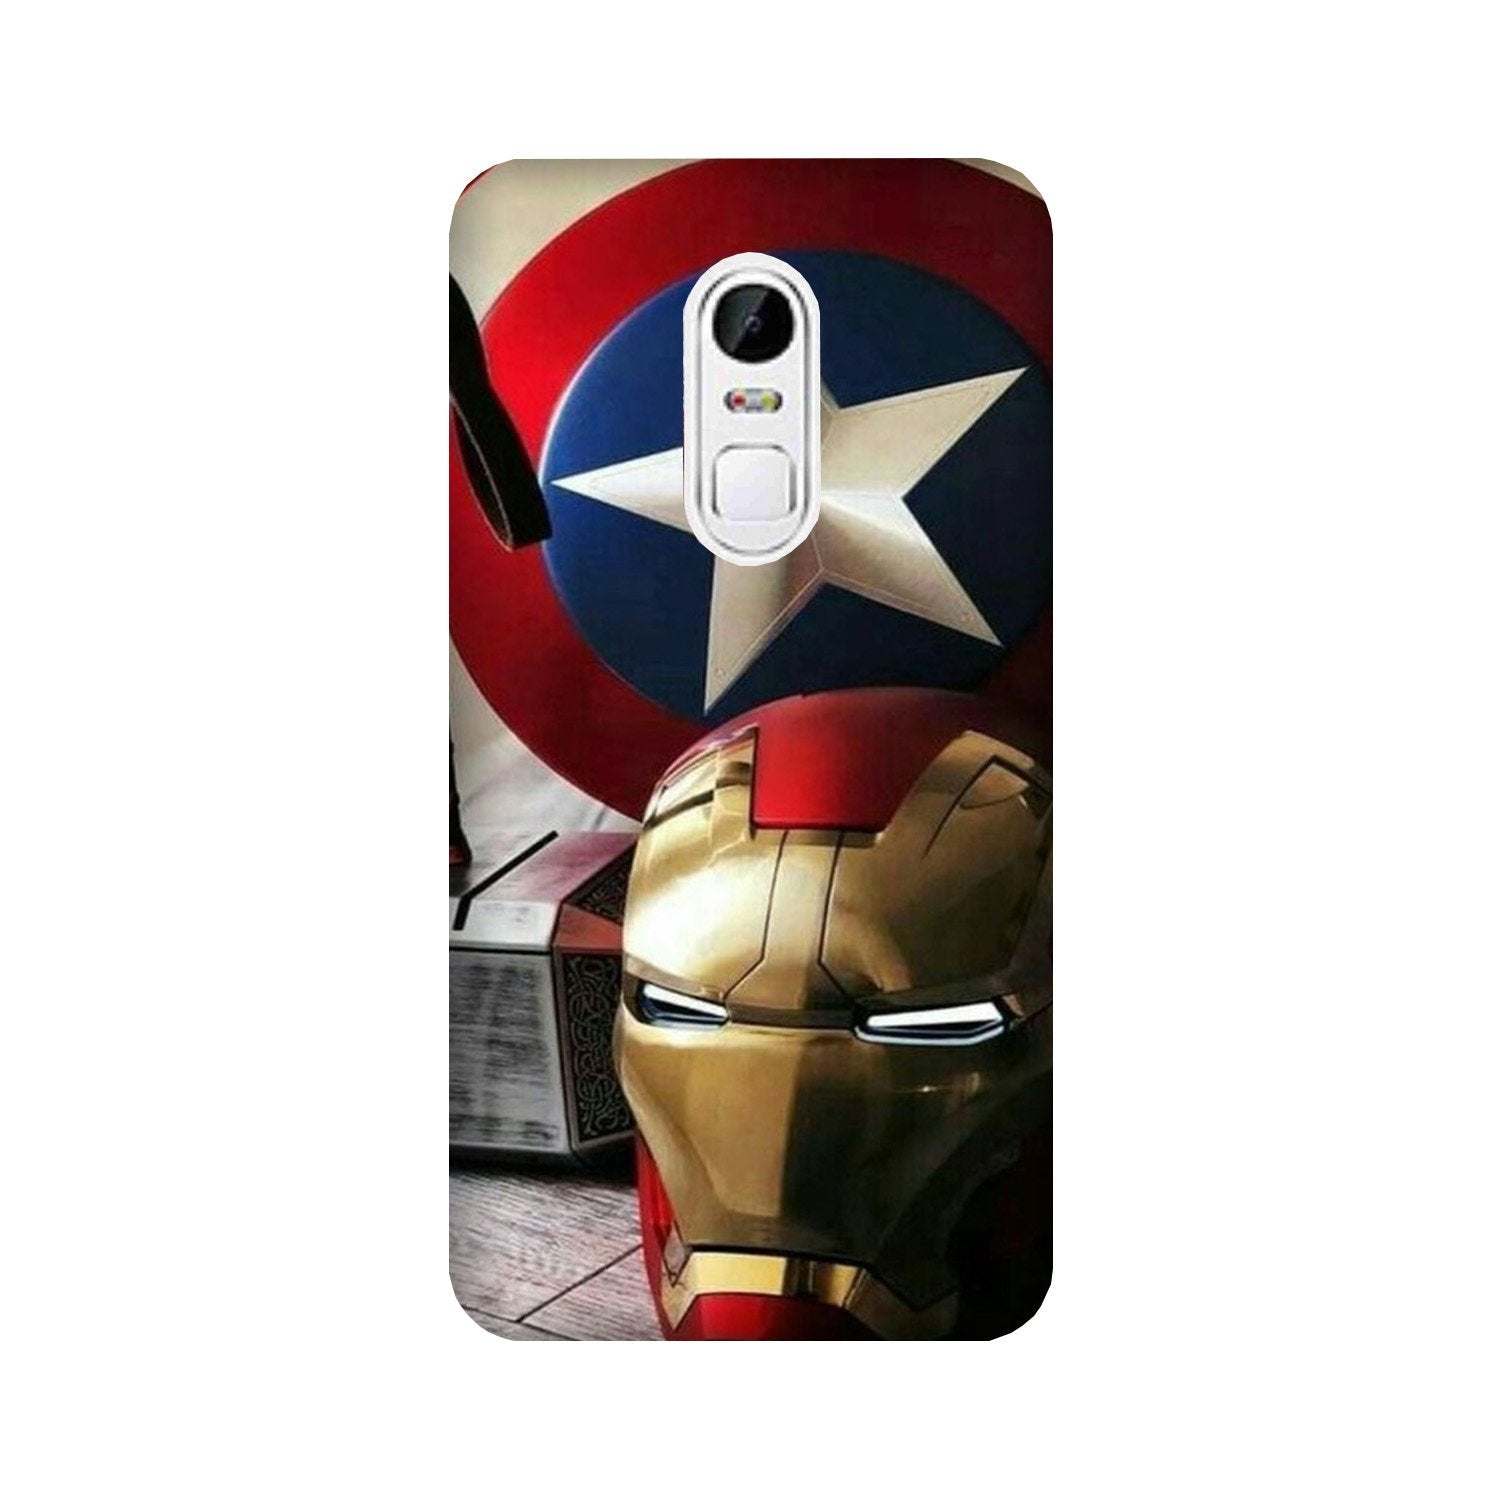 Ironman Captain America Case for Lenovo Vibe X3 (Design No. 254)